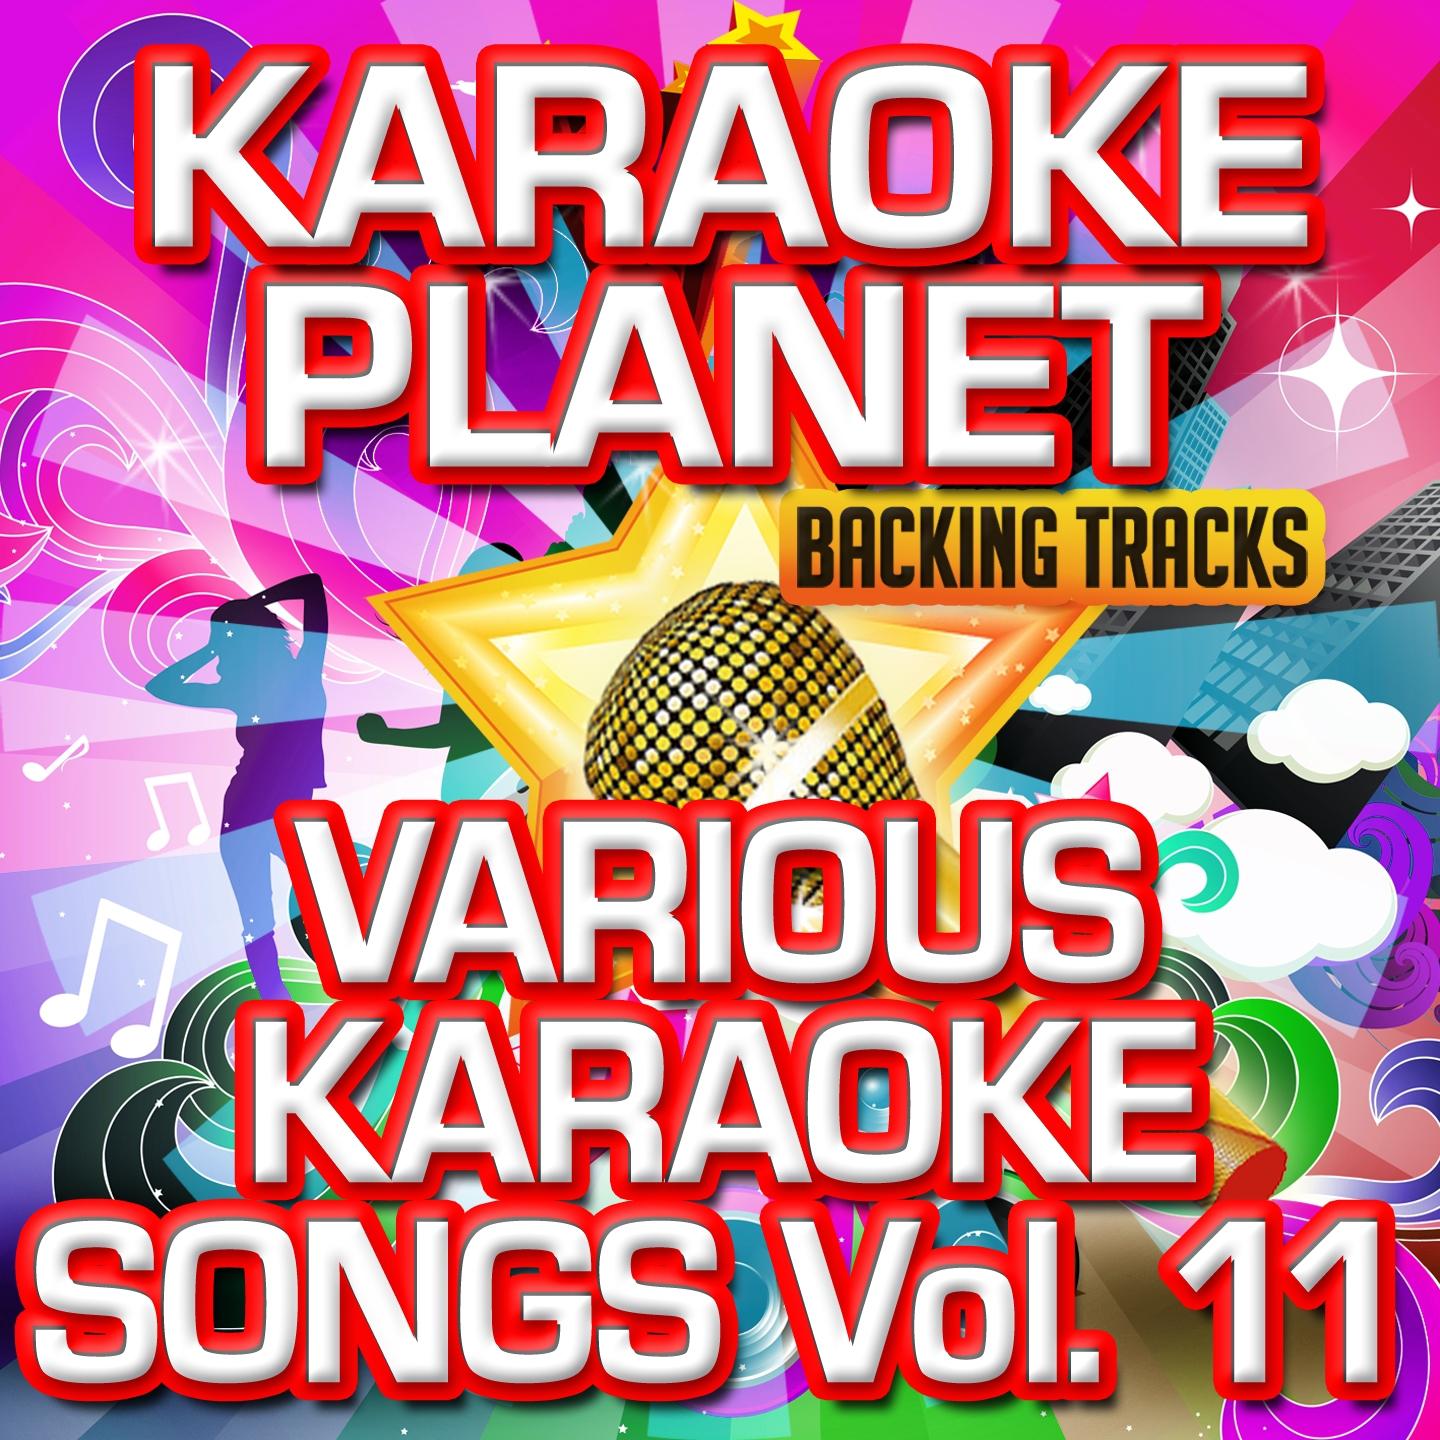 Various Karaoke Songs, Vol. 11